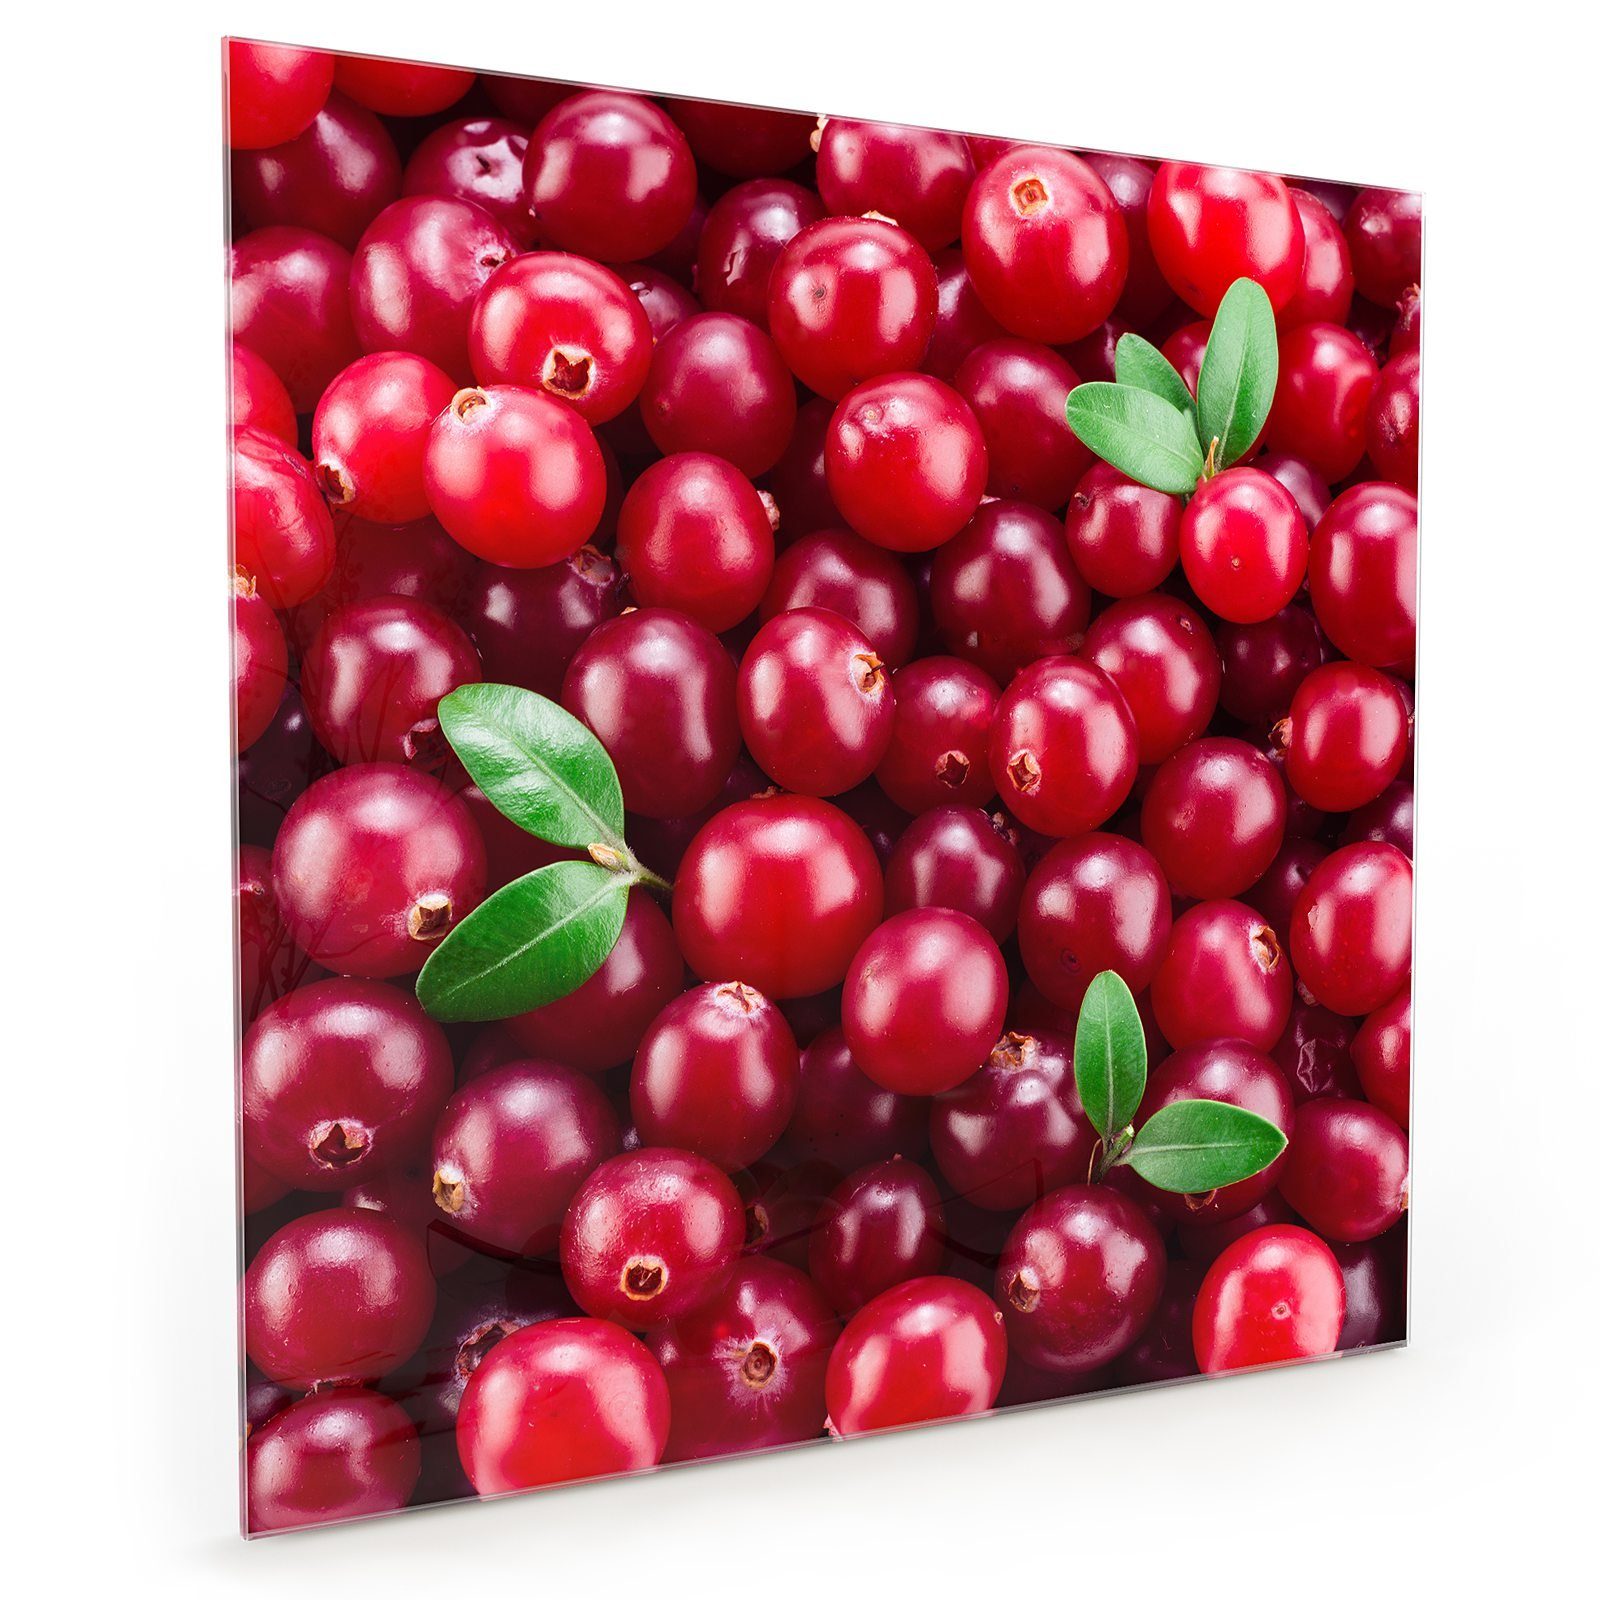 Primedeco Motiv mit Cranberrys Glas Blatt Küchenrückwand Spritzschutz mit Küchenrückwand